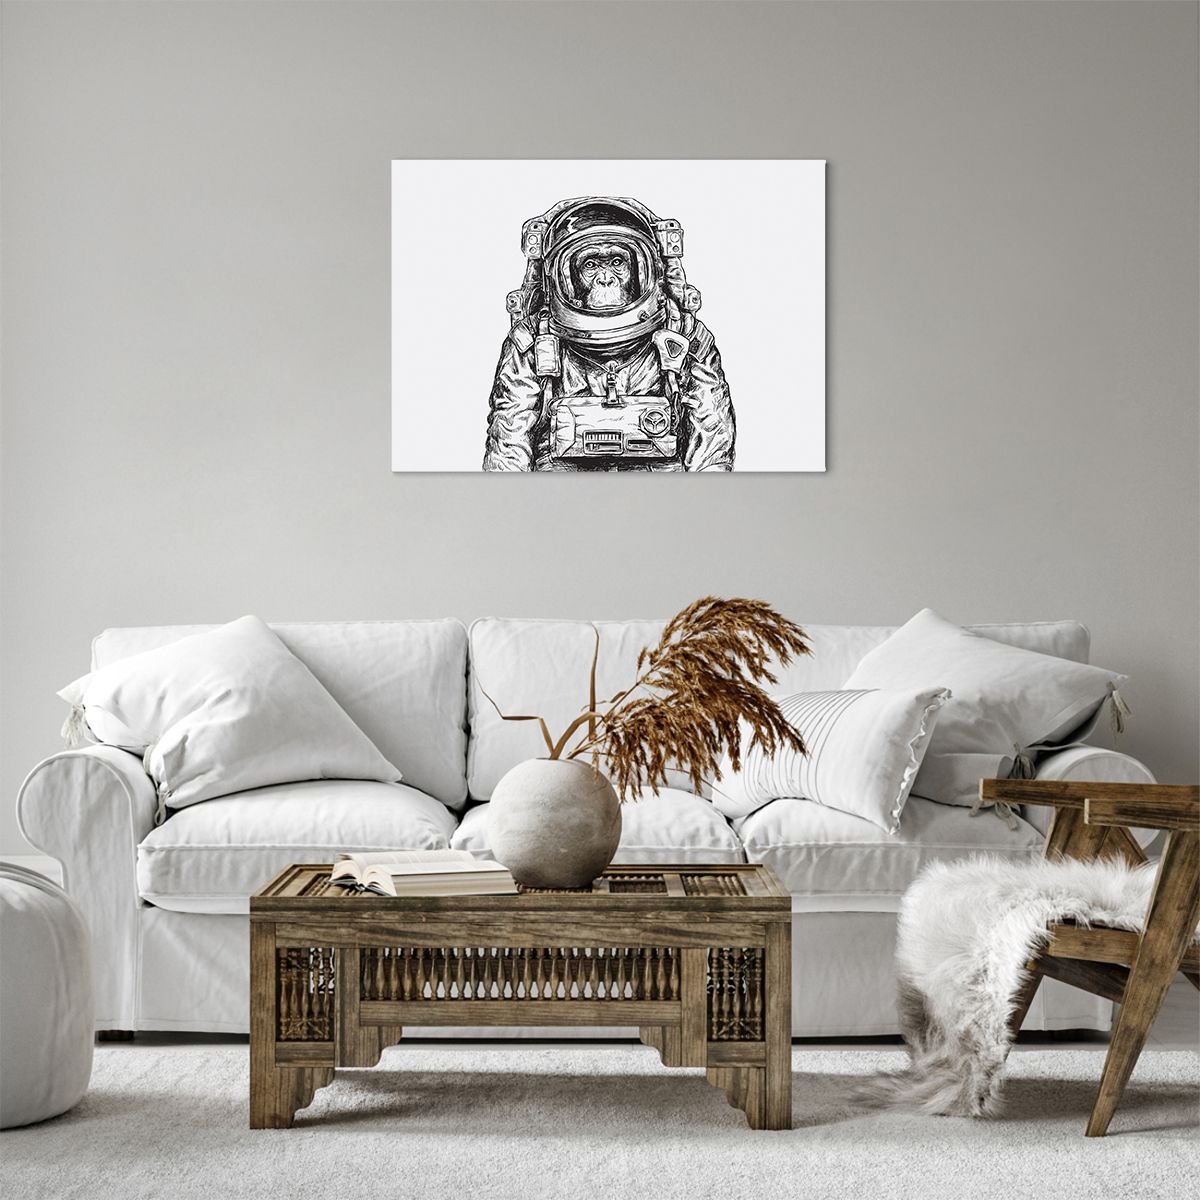 Quadro su tela Astrazione, Quadro su tela Astronauta, Quadro su tela Scimmia, Quadro su tela Arte, Quadro su tela Bianco E Nero